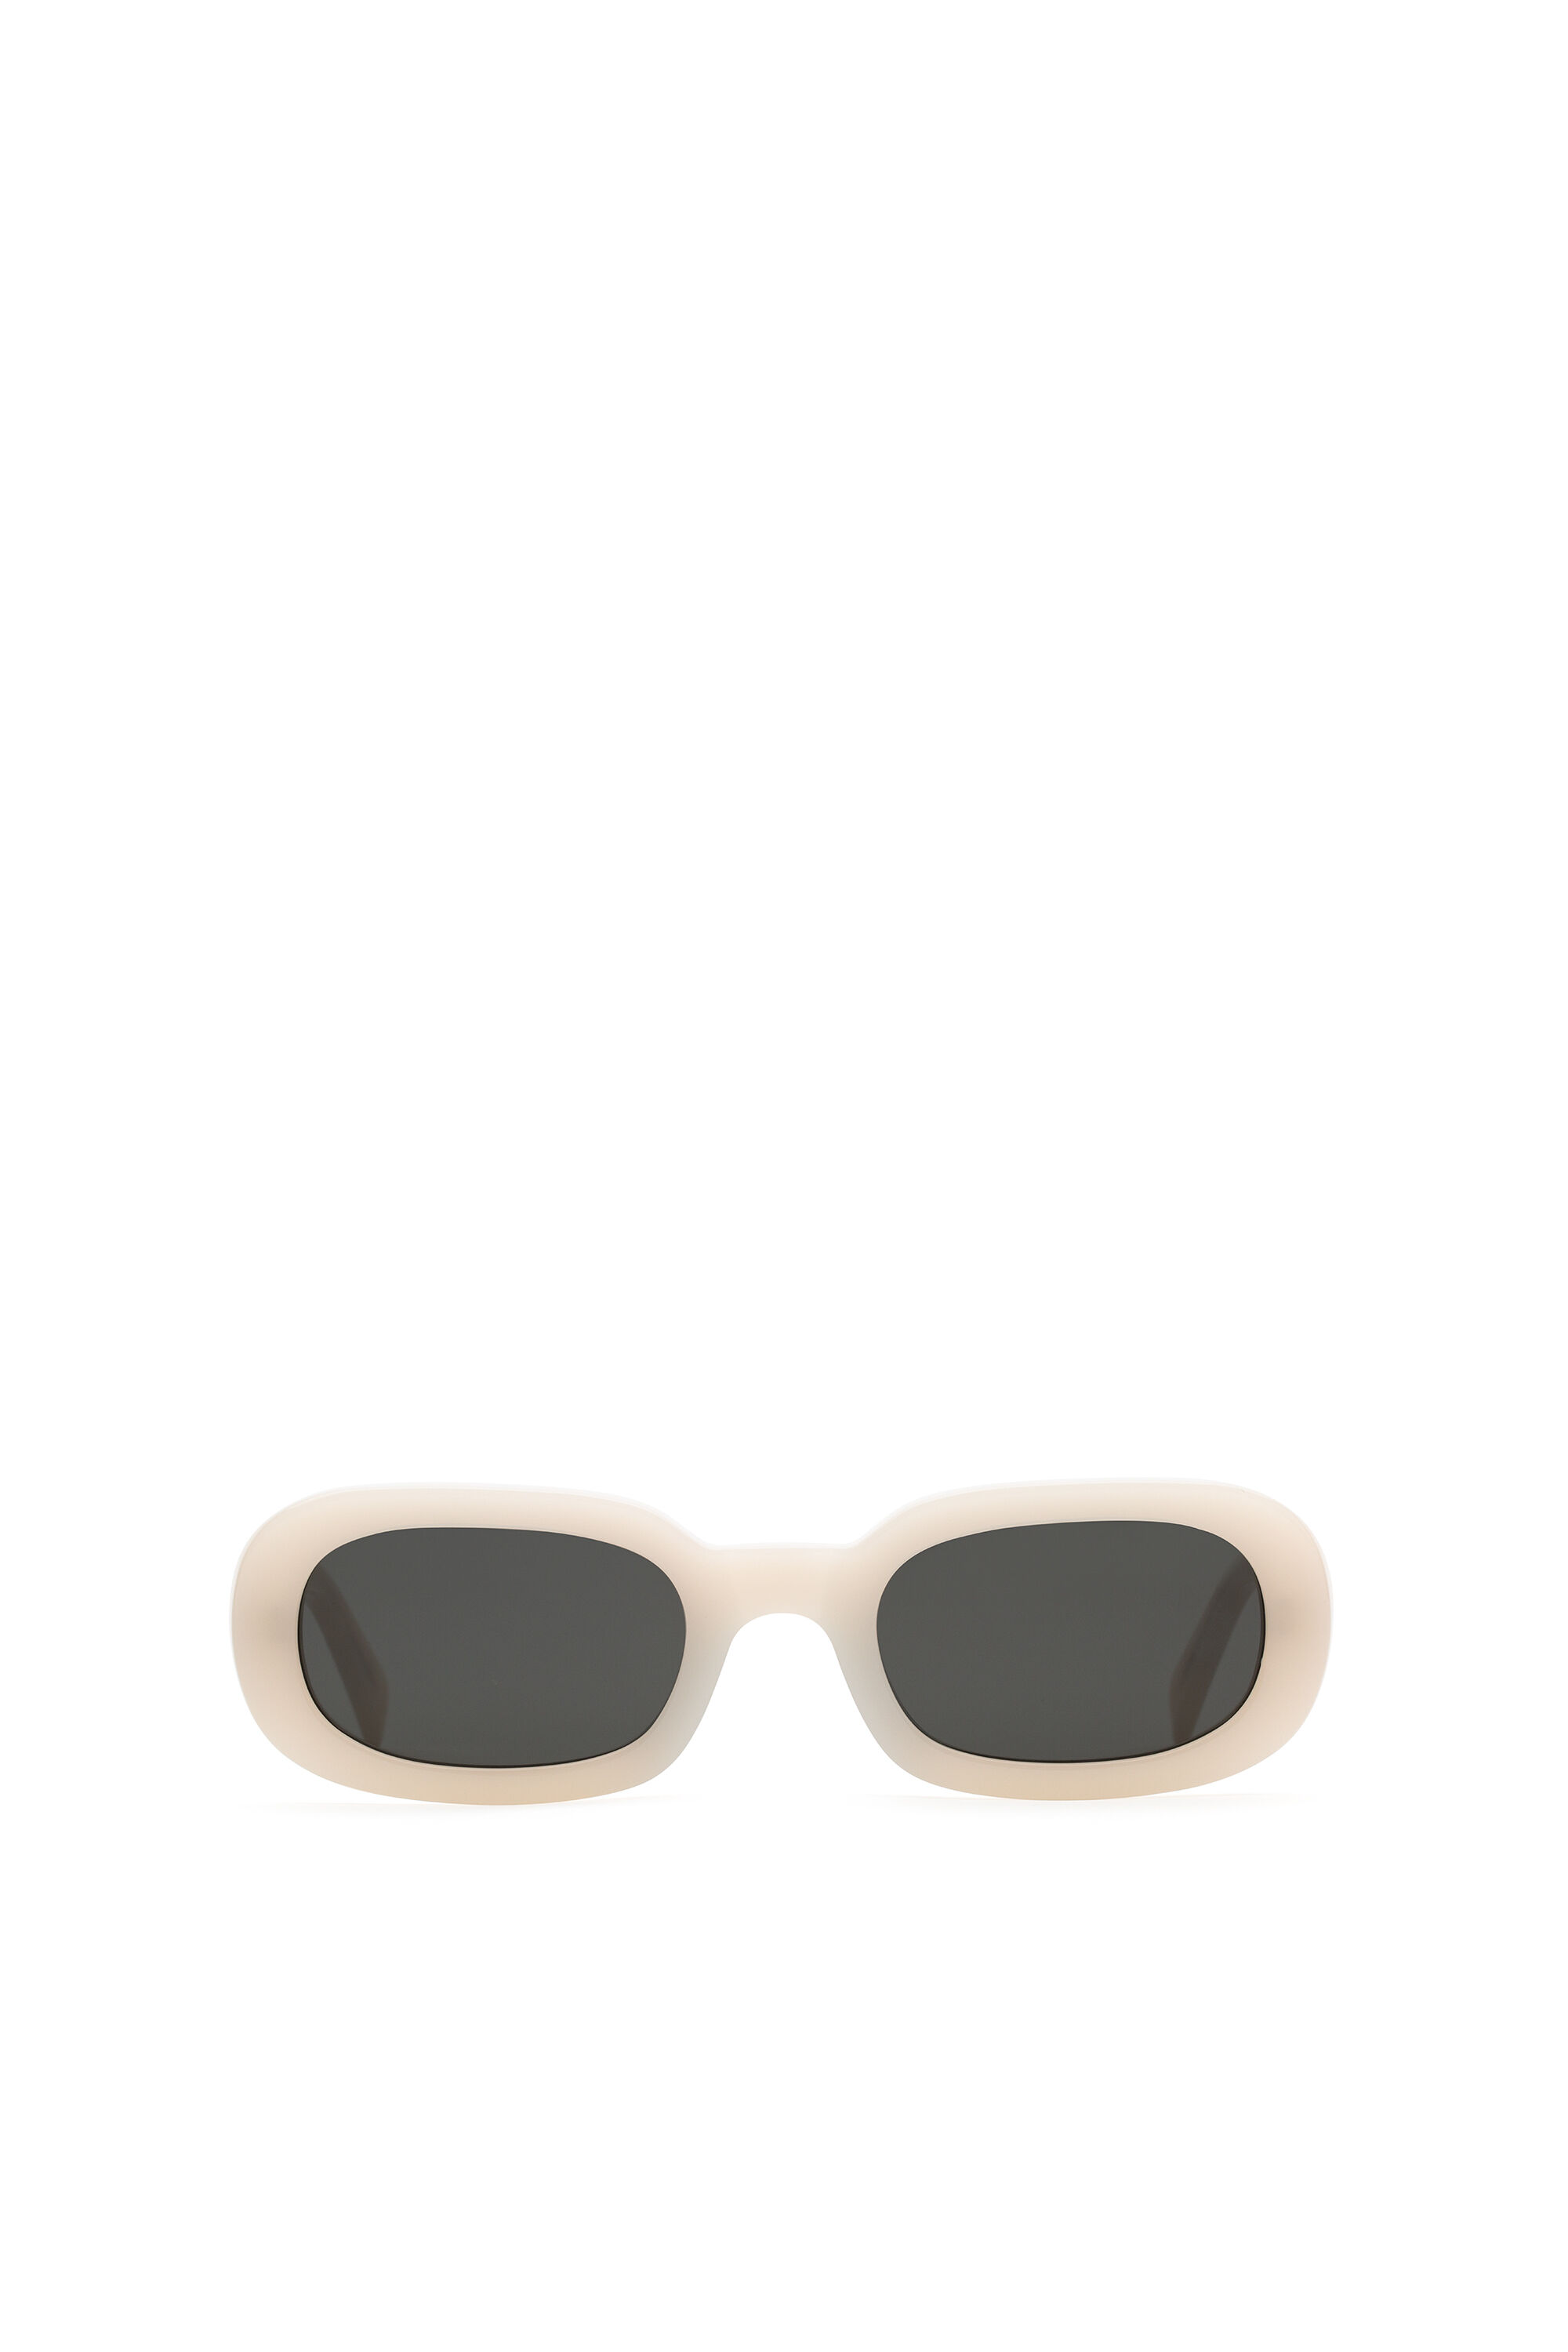 fuga chorro Marcado DM0361 Mujer: Gafas de sol ovaladas | Diesel